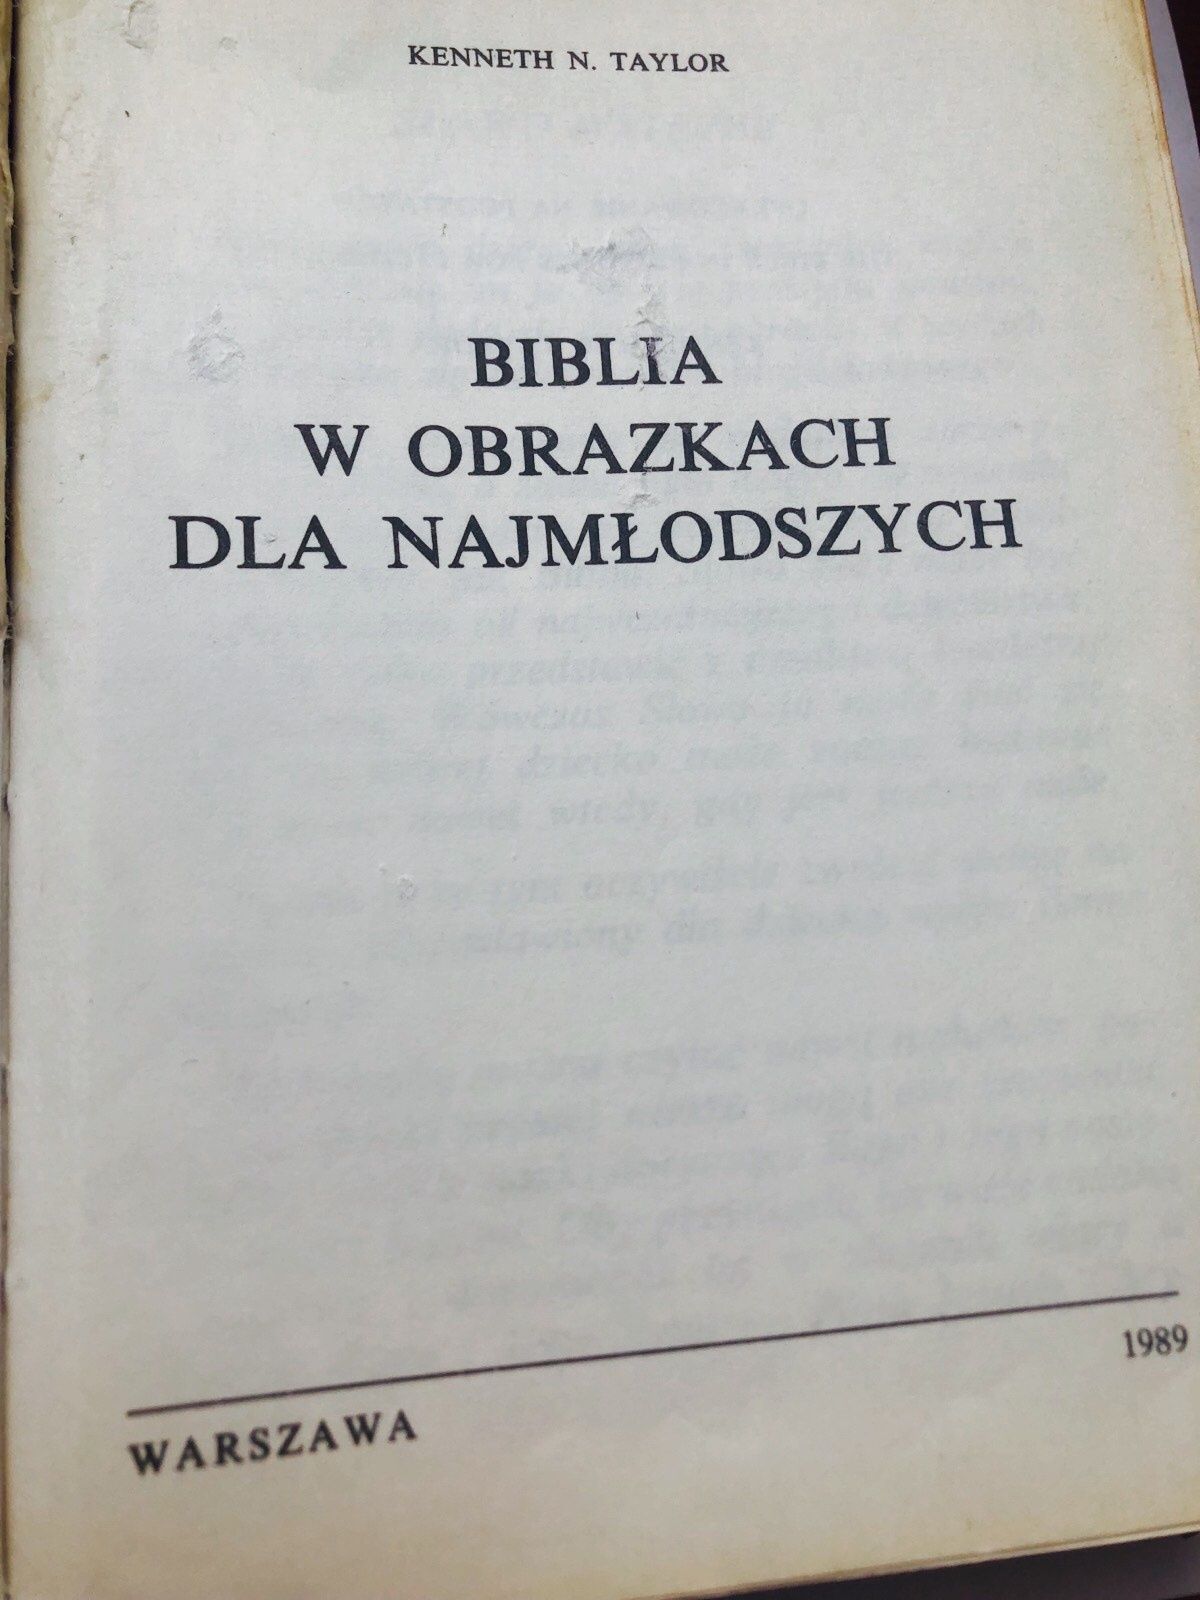 Библия в картинках на польском языке,